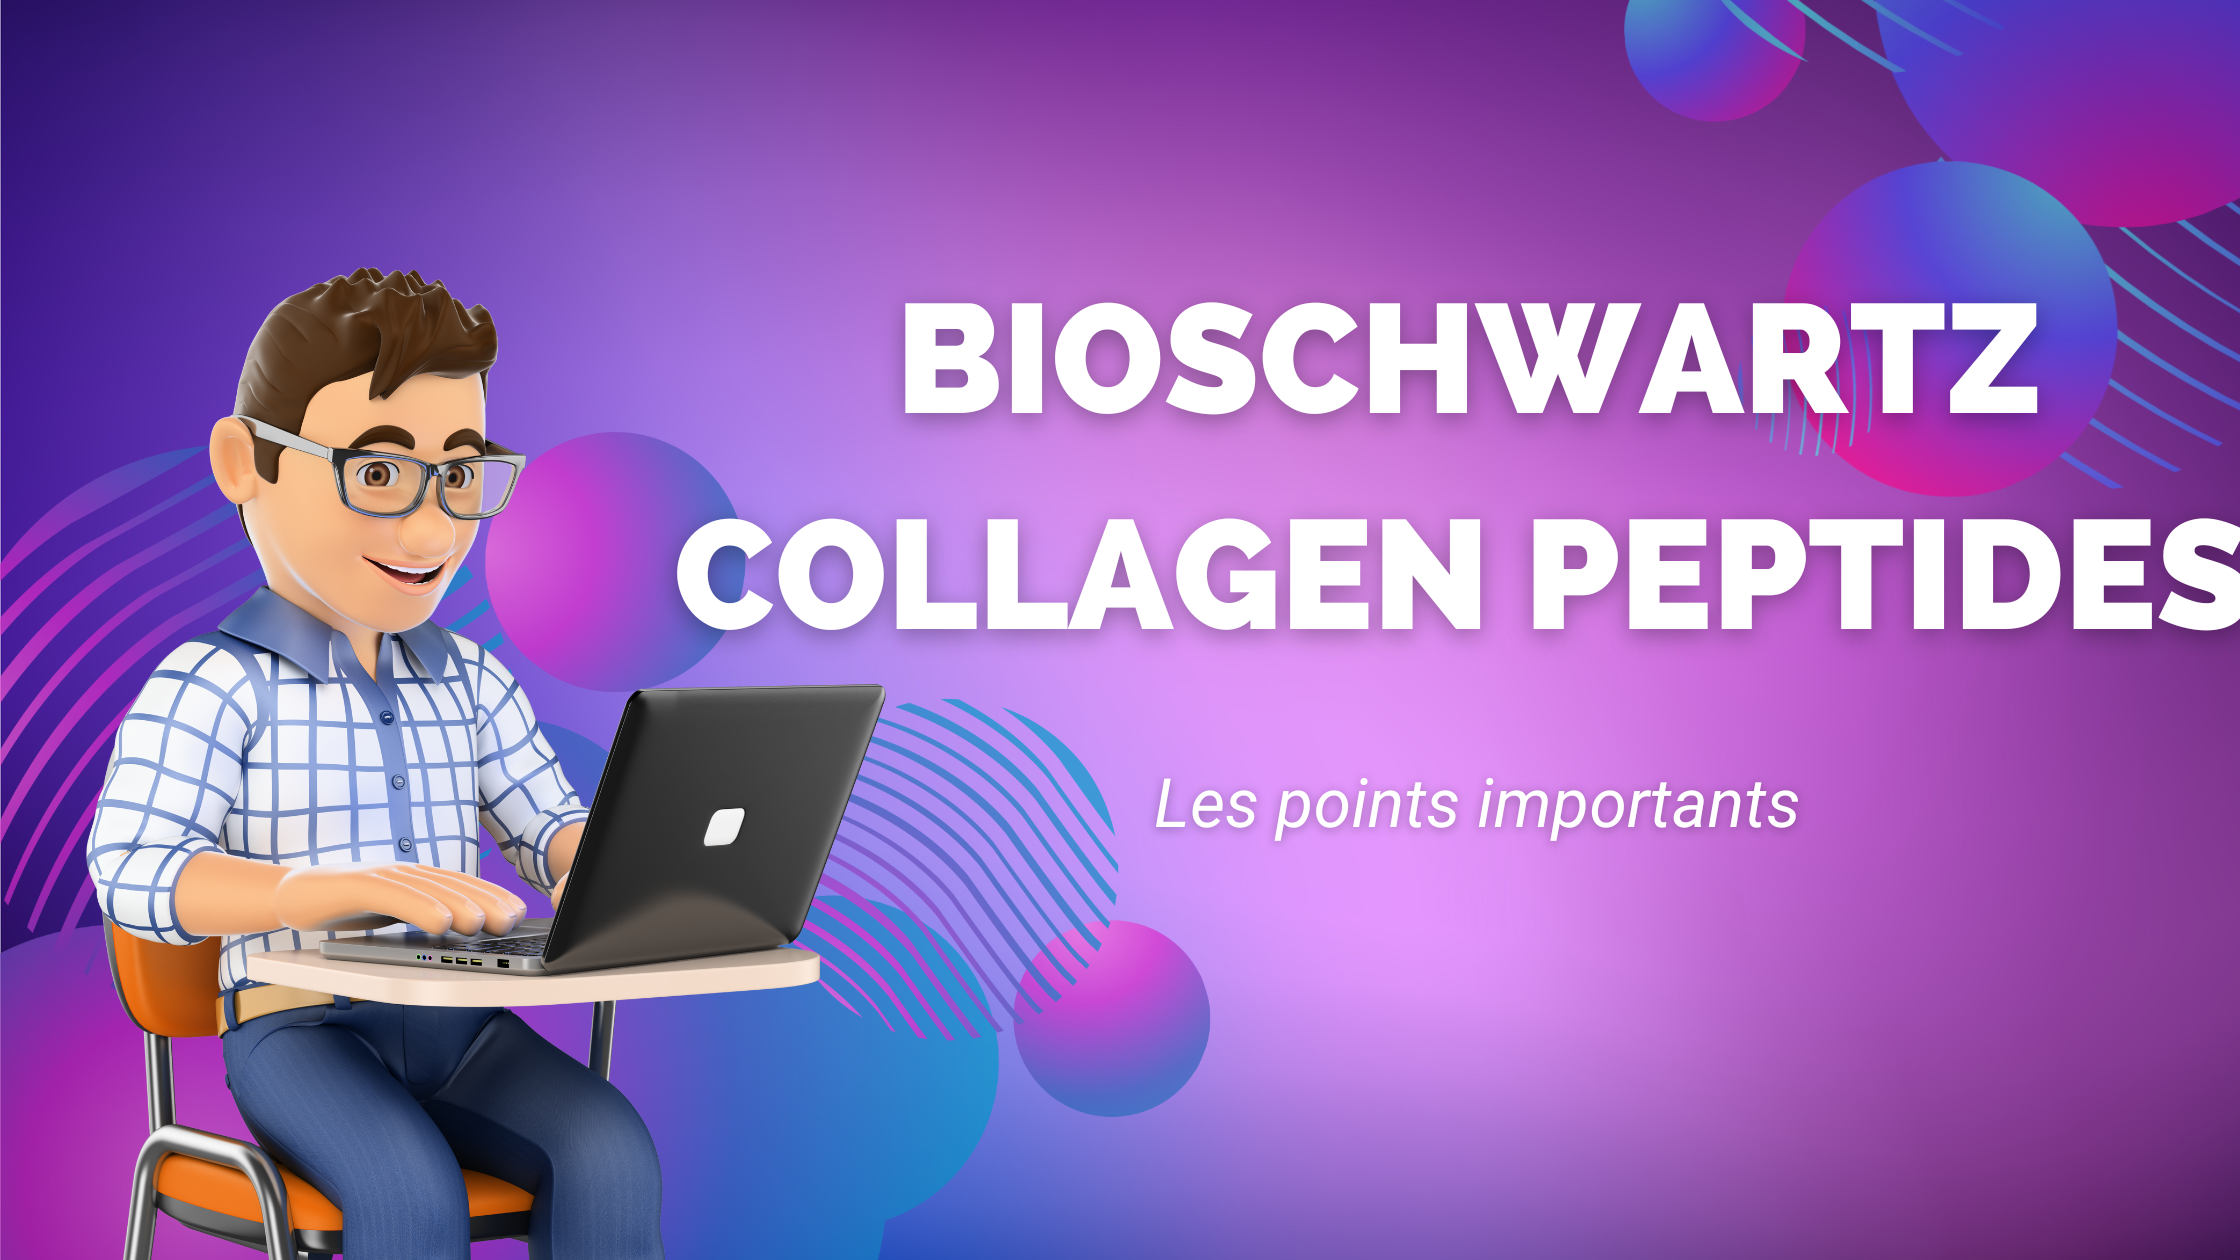 Bioschwartz collagen peptides | Les points importants